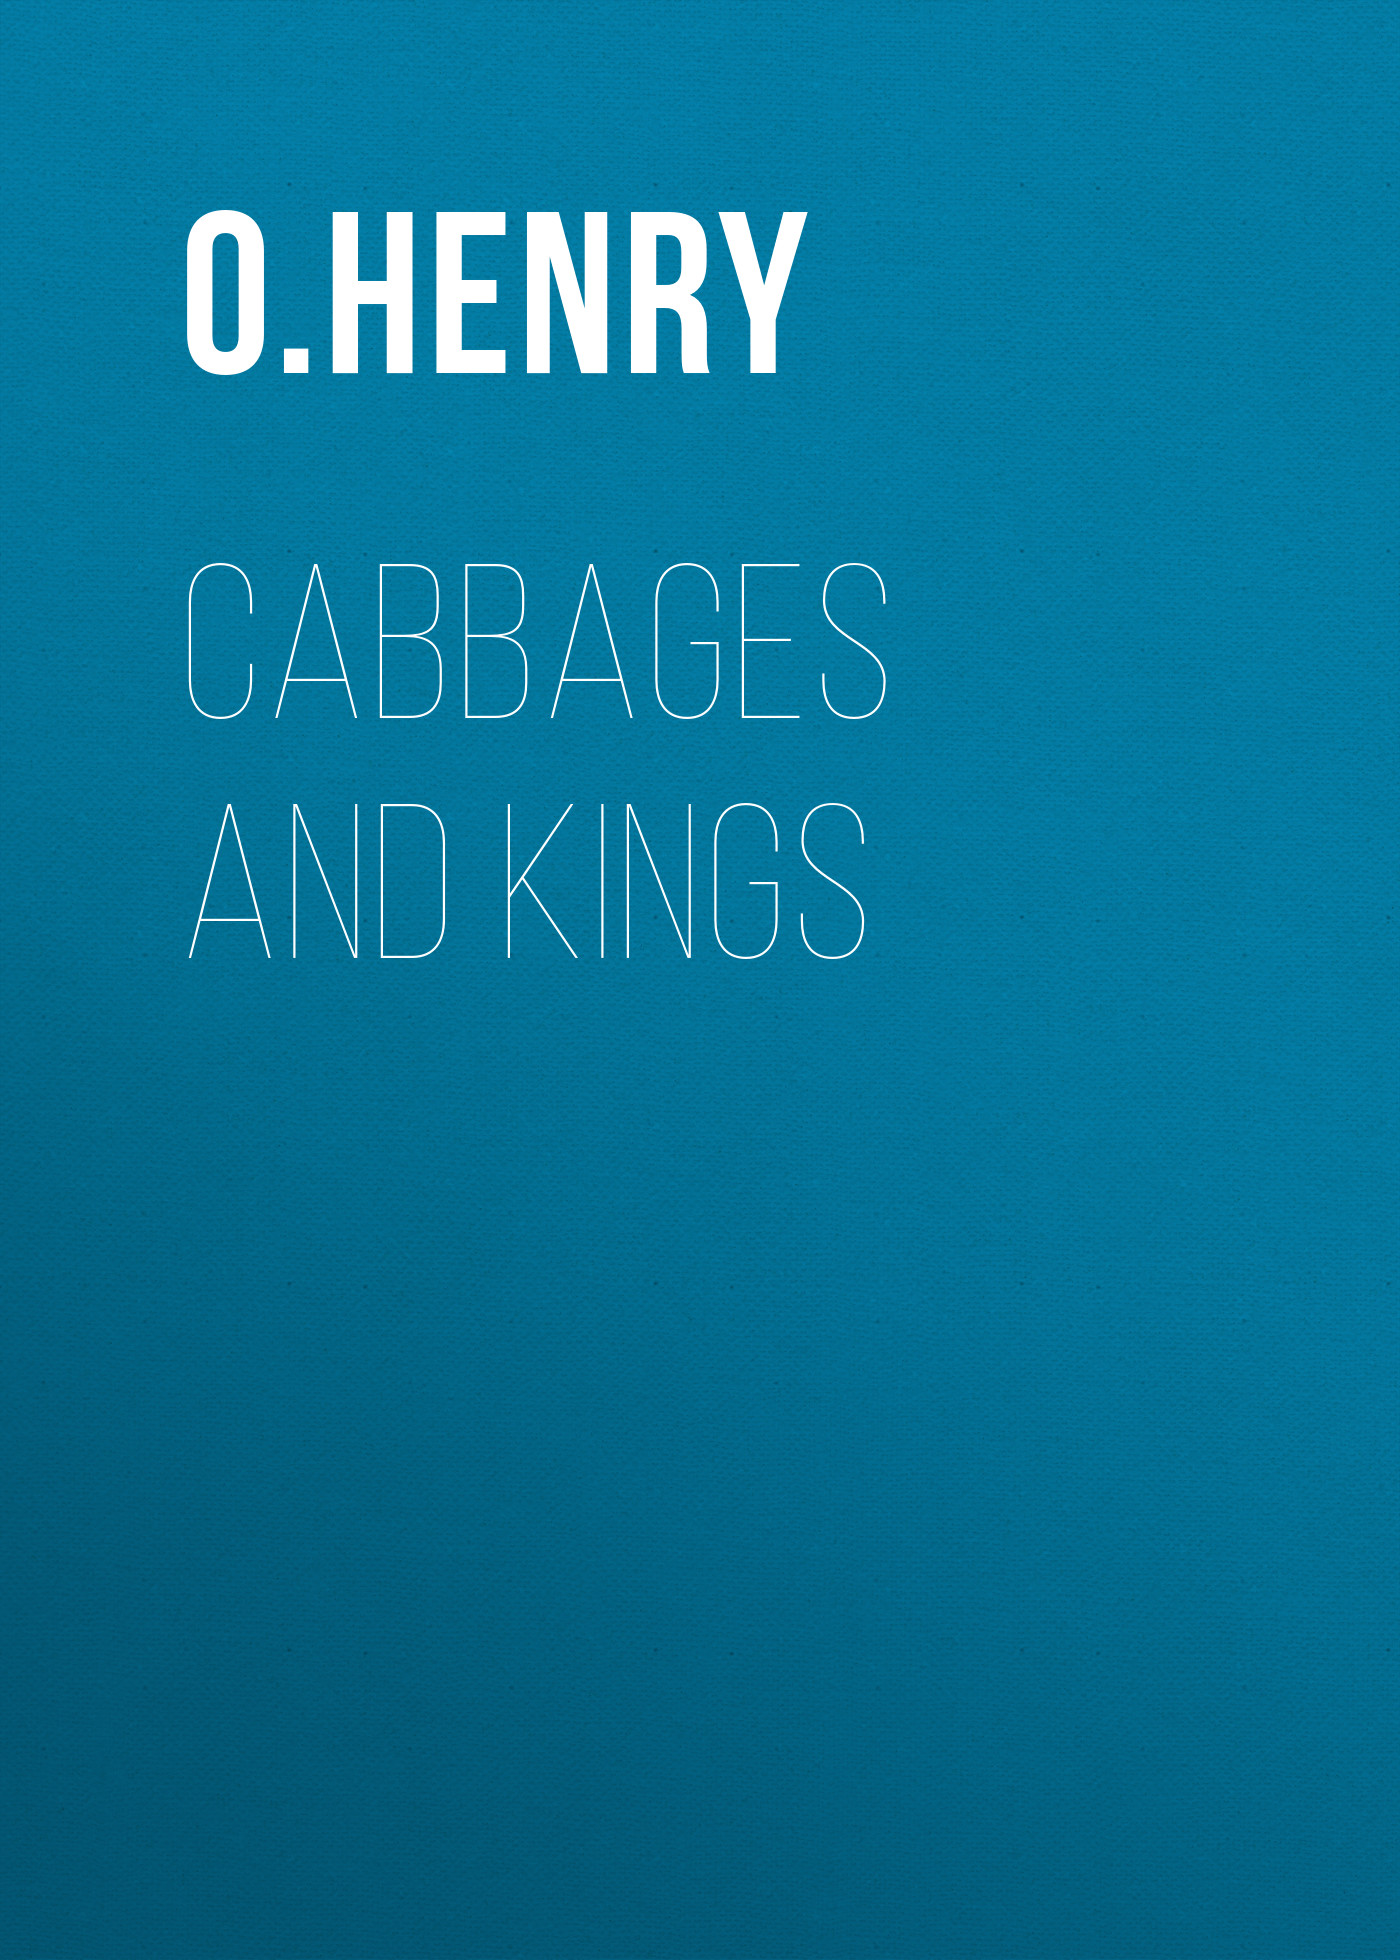 Книга Cabbages and Kings из серии , созданная O. Henry, может относится к жанру Литература 20 века, Зарубежная классика. Стоимость электронной книги Cabbages and Kings с идентификатором 25559972 составляет 0 руб.